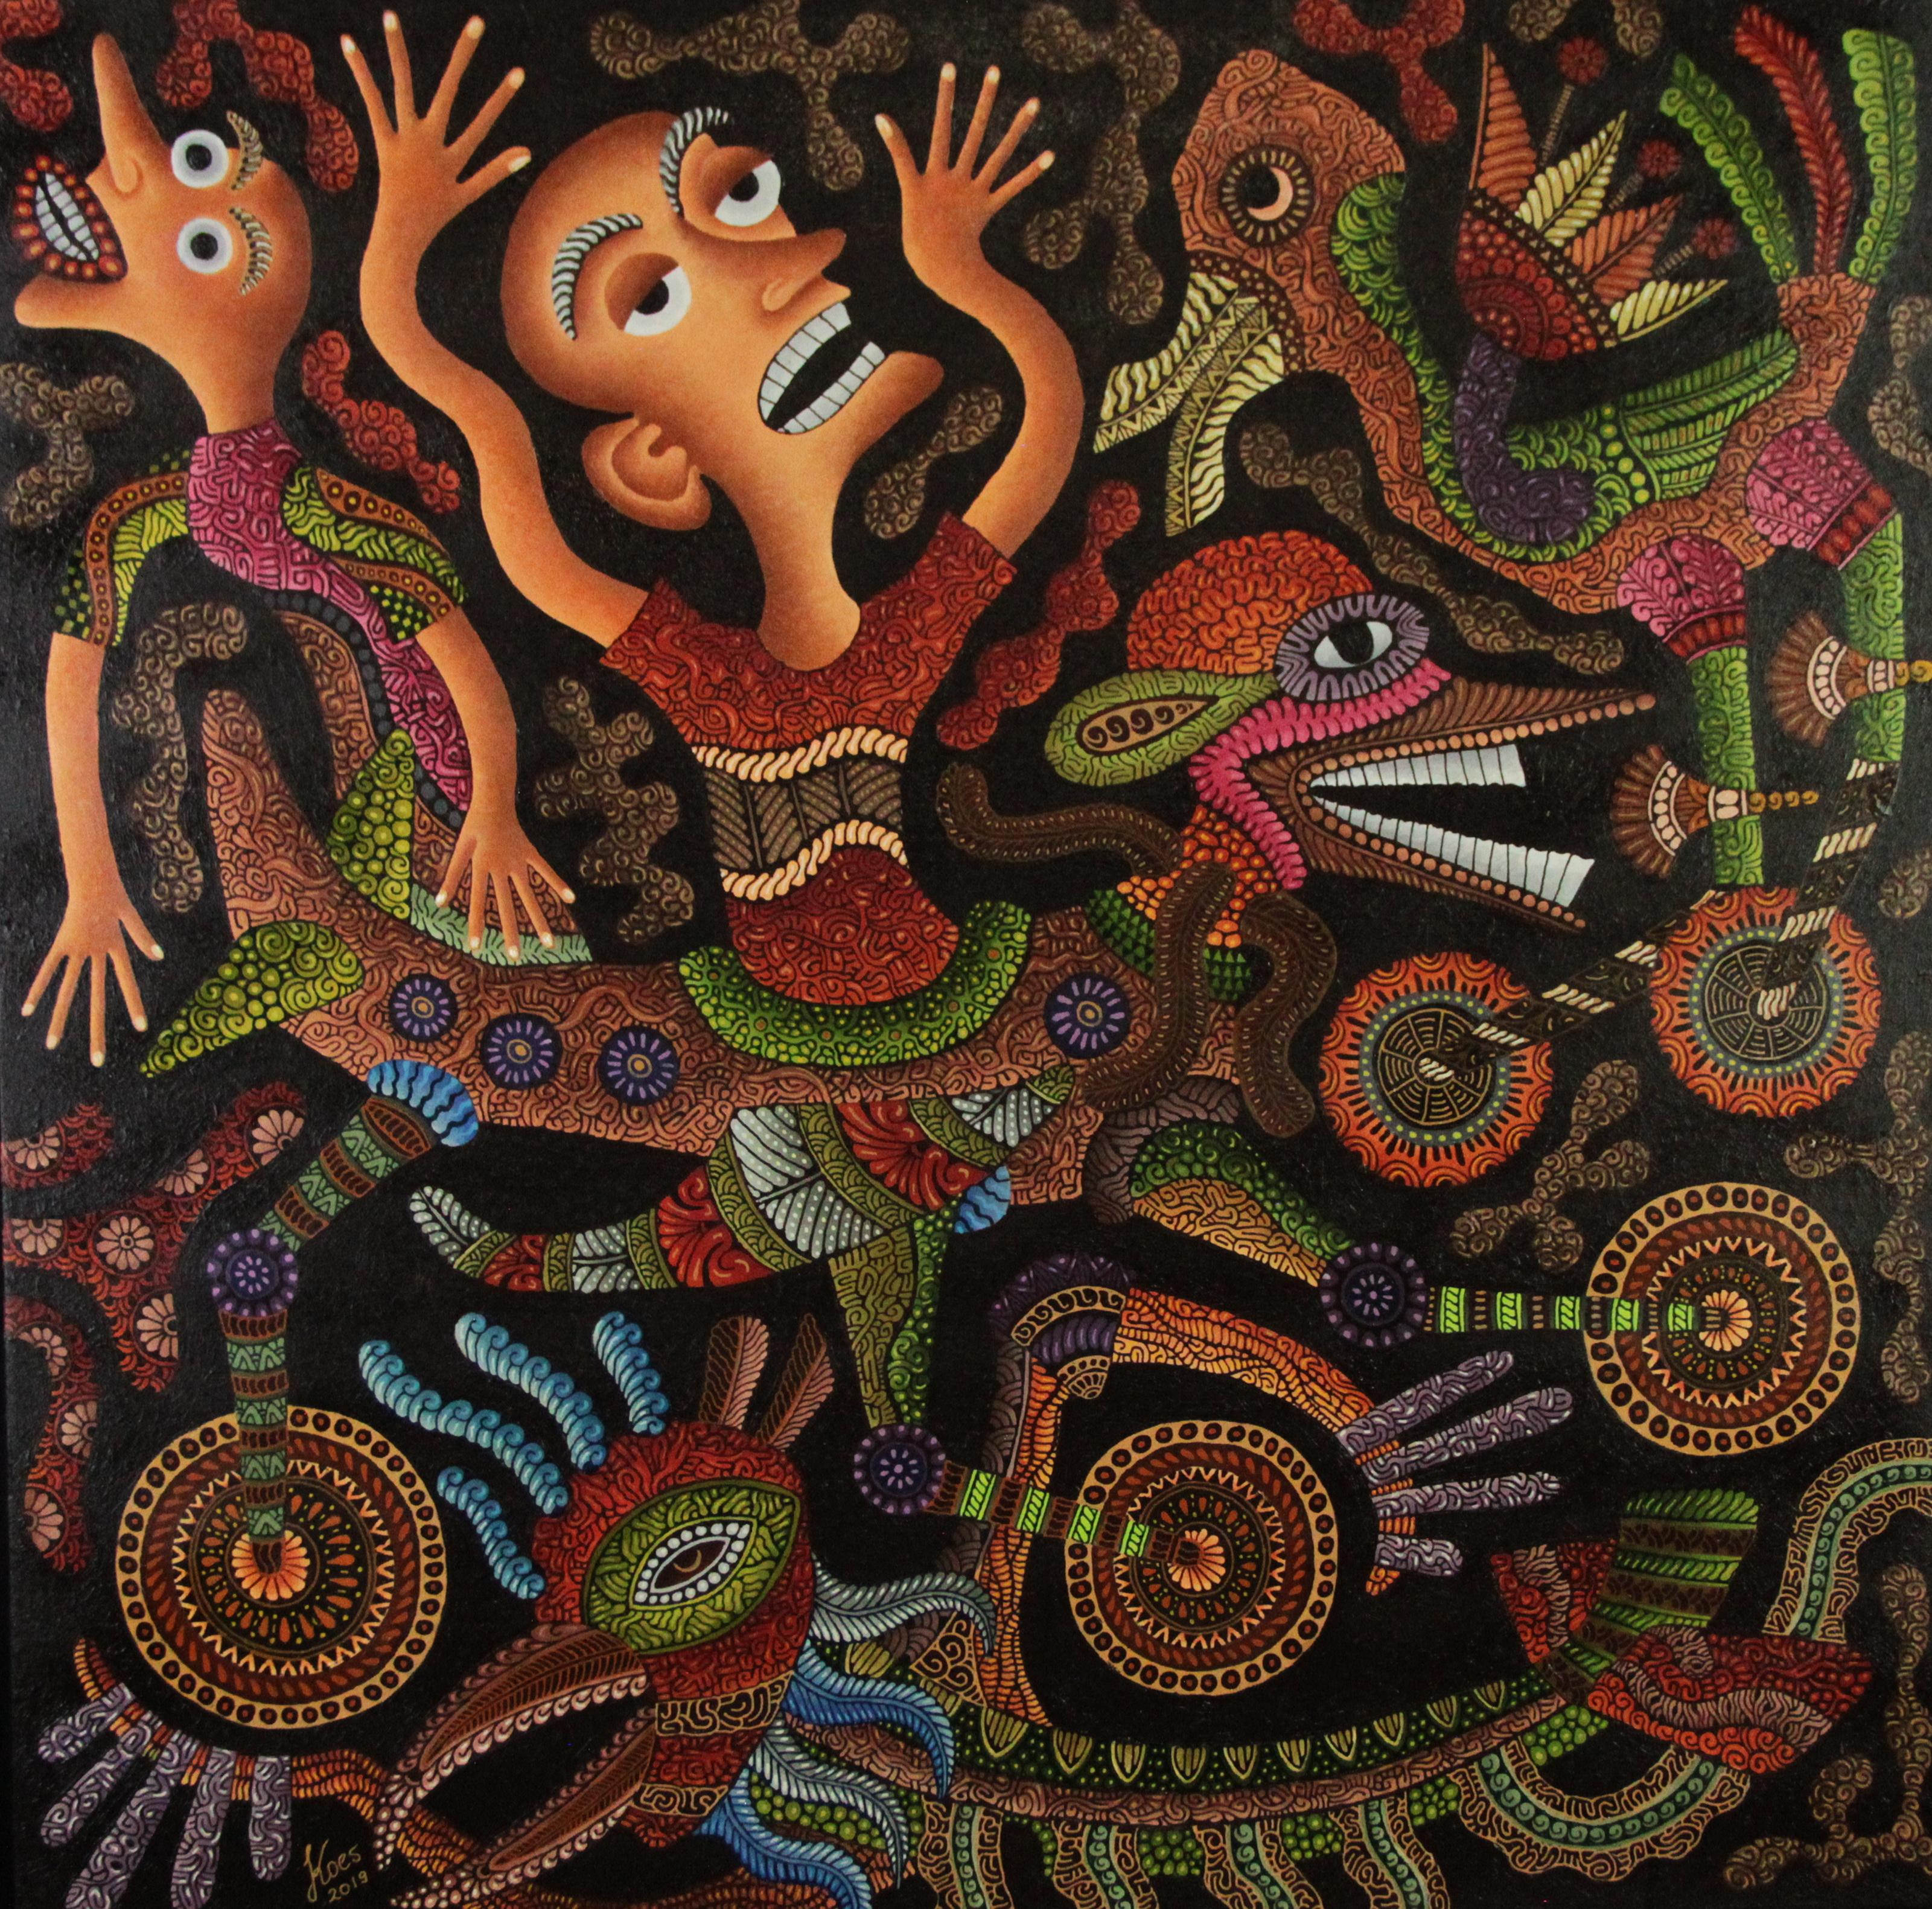 Kusbudiyanto ist ein 1969 geborener indonesischer Künstler, der in Jogjakarta, Indonesien, lebt und arbeitet.

Dieses Bild erzählt vom Traum eines Kindes, zu fliegen und seinen Traum zu verwirklichen. Fliege wie ein Vogel und fliege jedes Mal ein